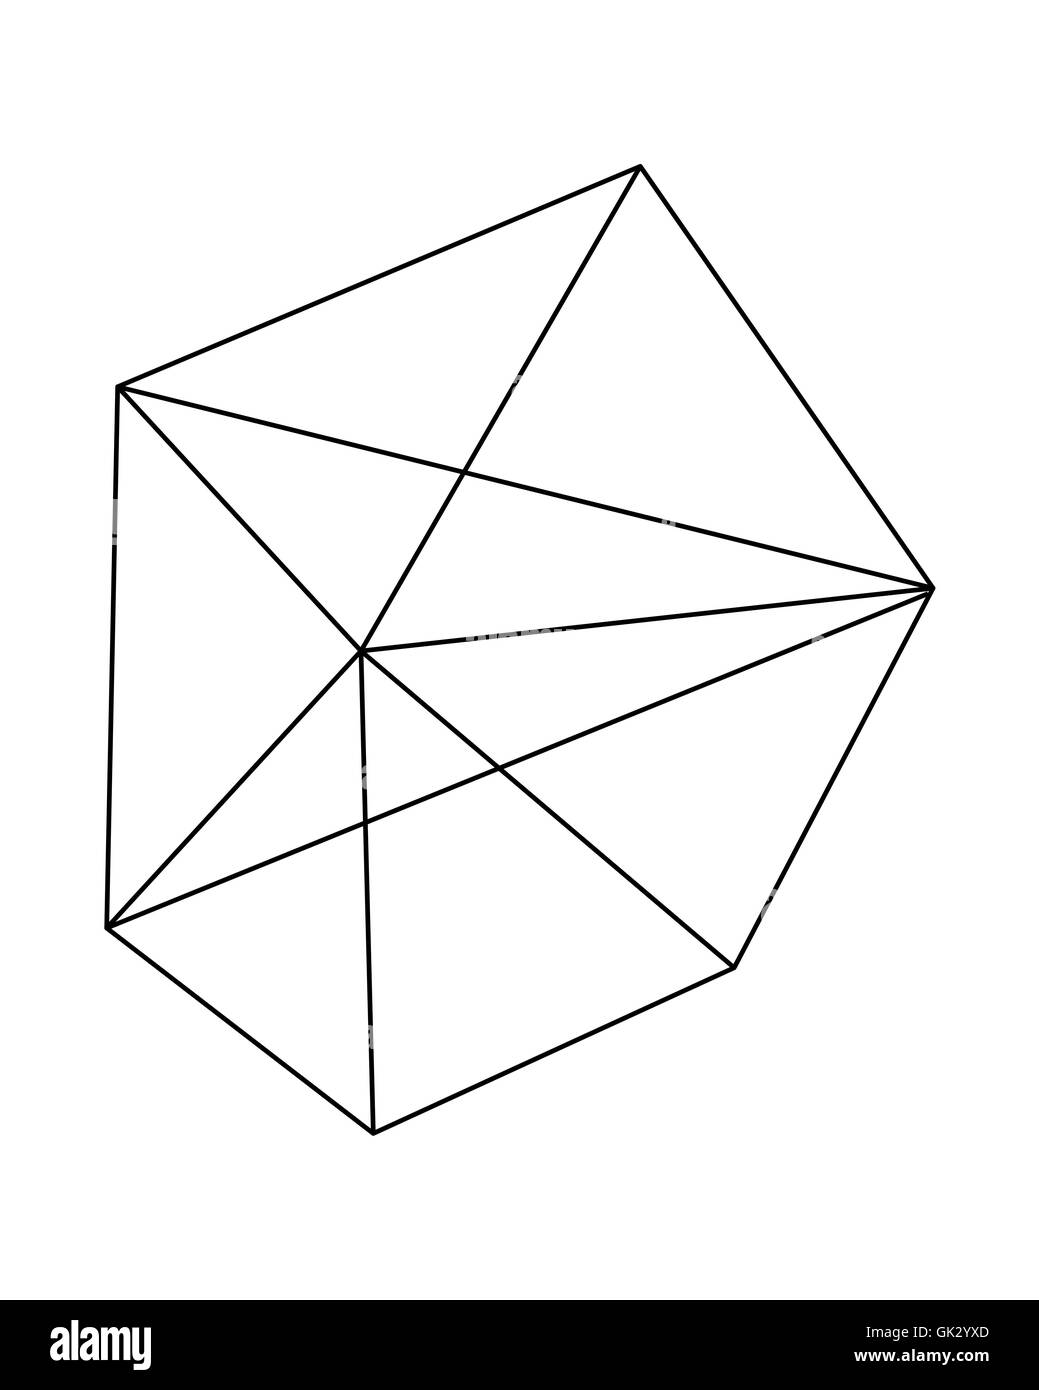 Vektor-Illustration oder eine Zeichnung von einem polygonalen geometrische abstrakte form Stockfoto